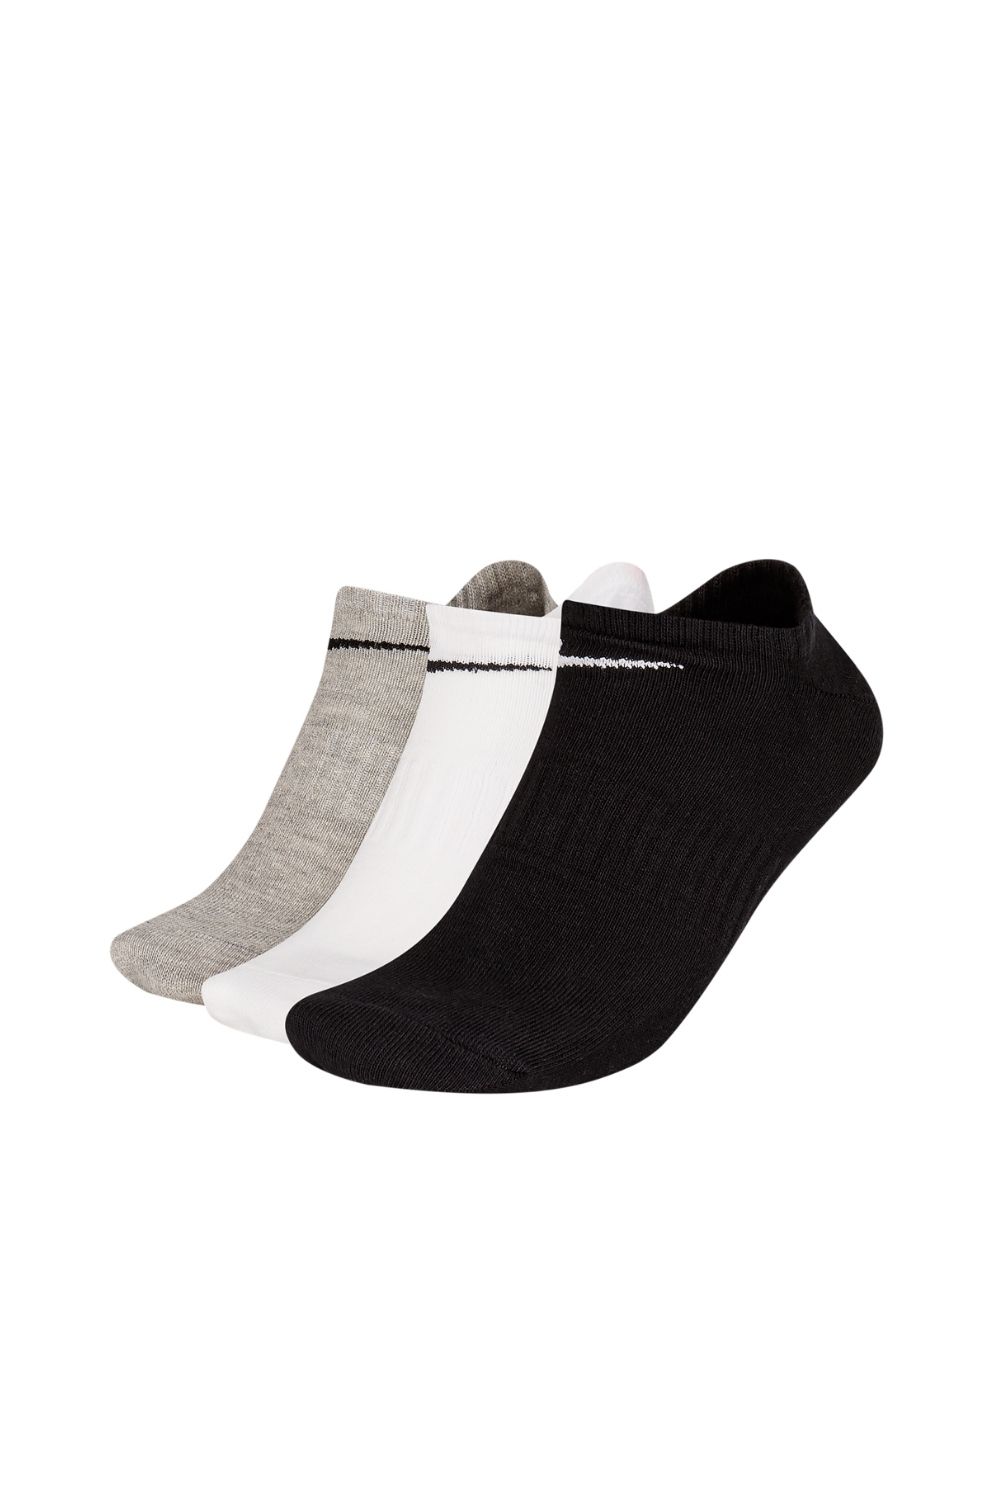 NIKE – Unisex κάλτσες σετ των 3 NIKE EVERYDAY LTWT μαύρο λευκό γκρι 1691265.1-0201